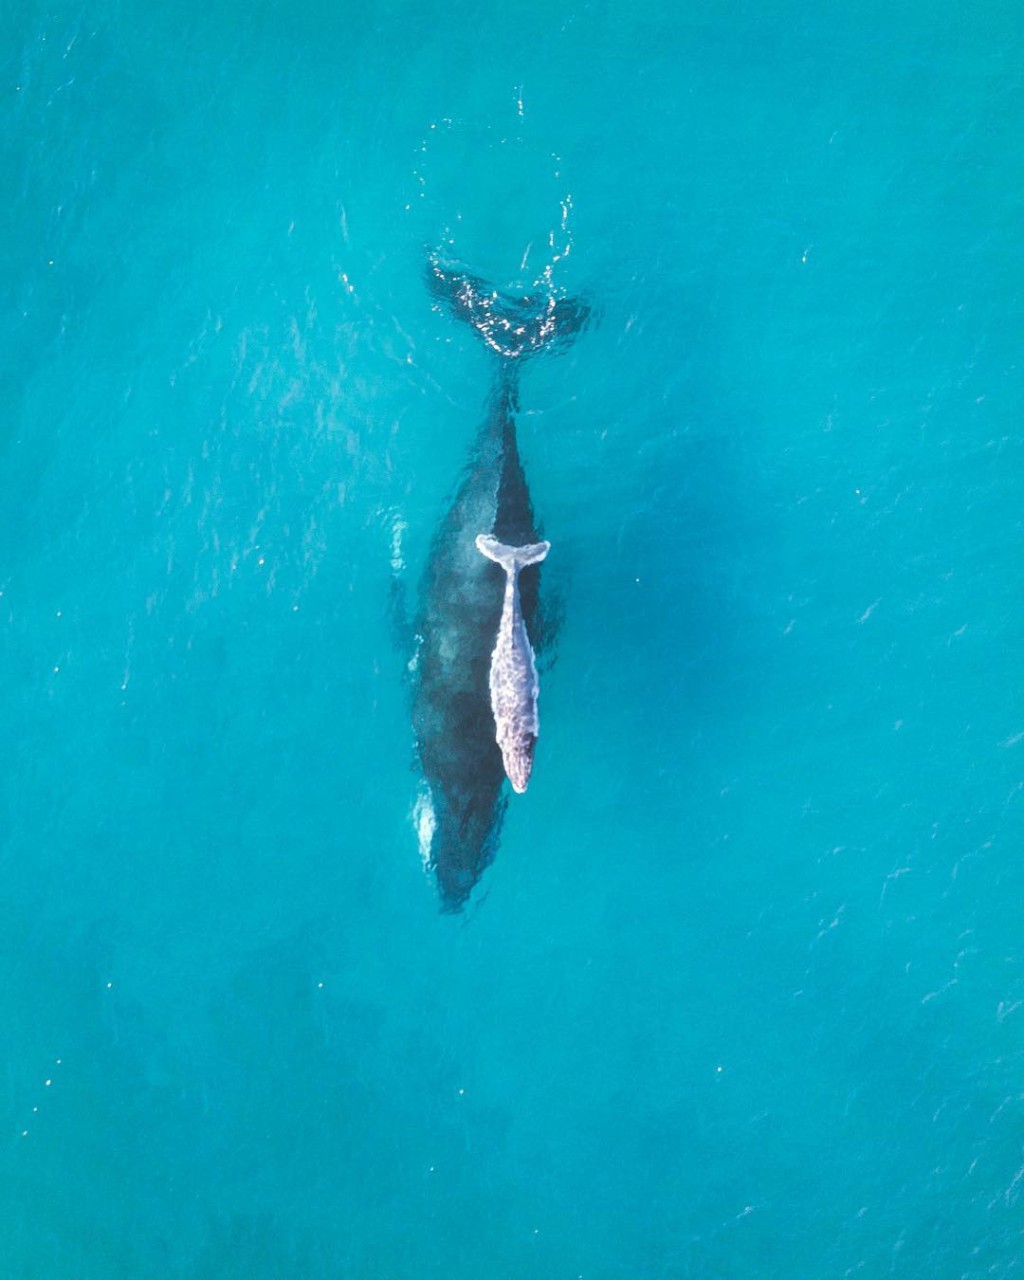 2019_GC_Whales_Whales_@nathanprostamo